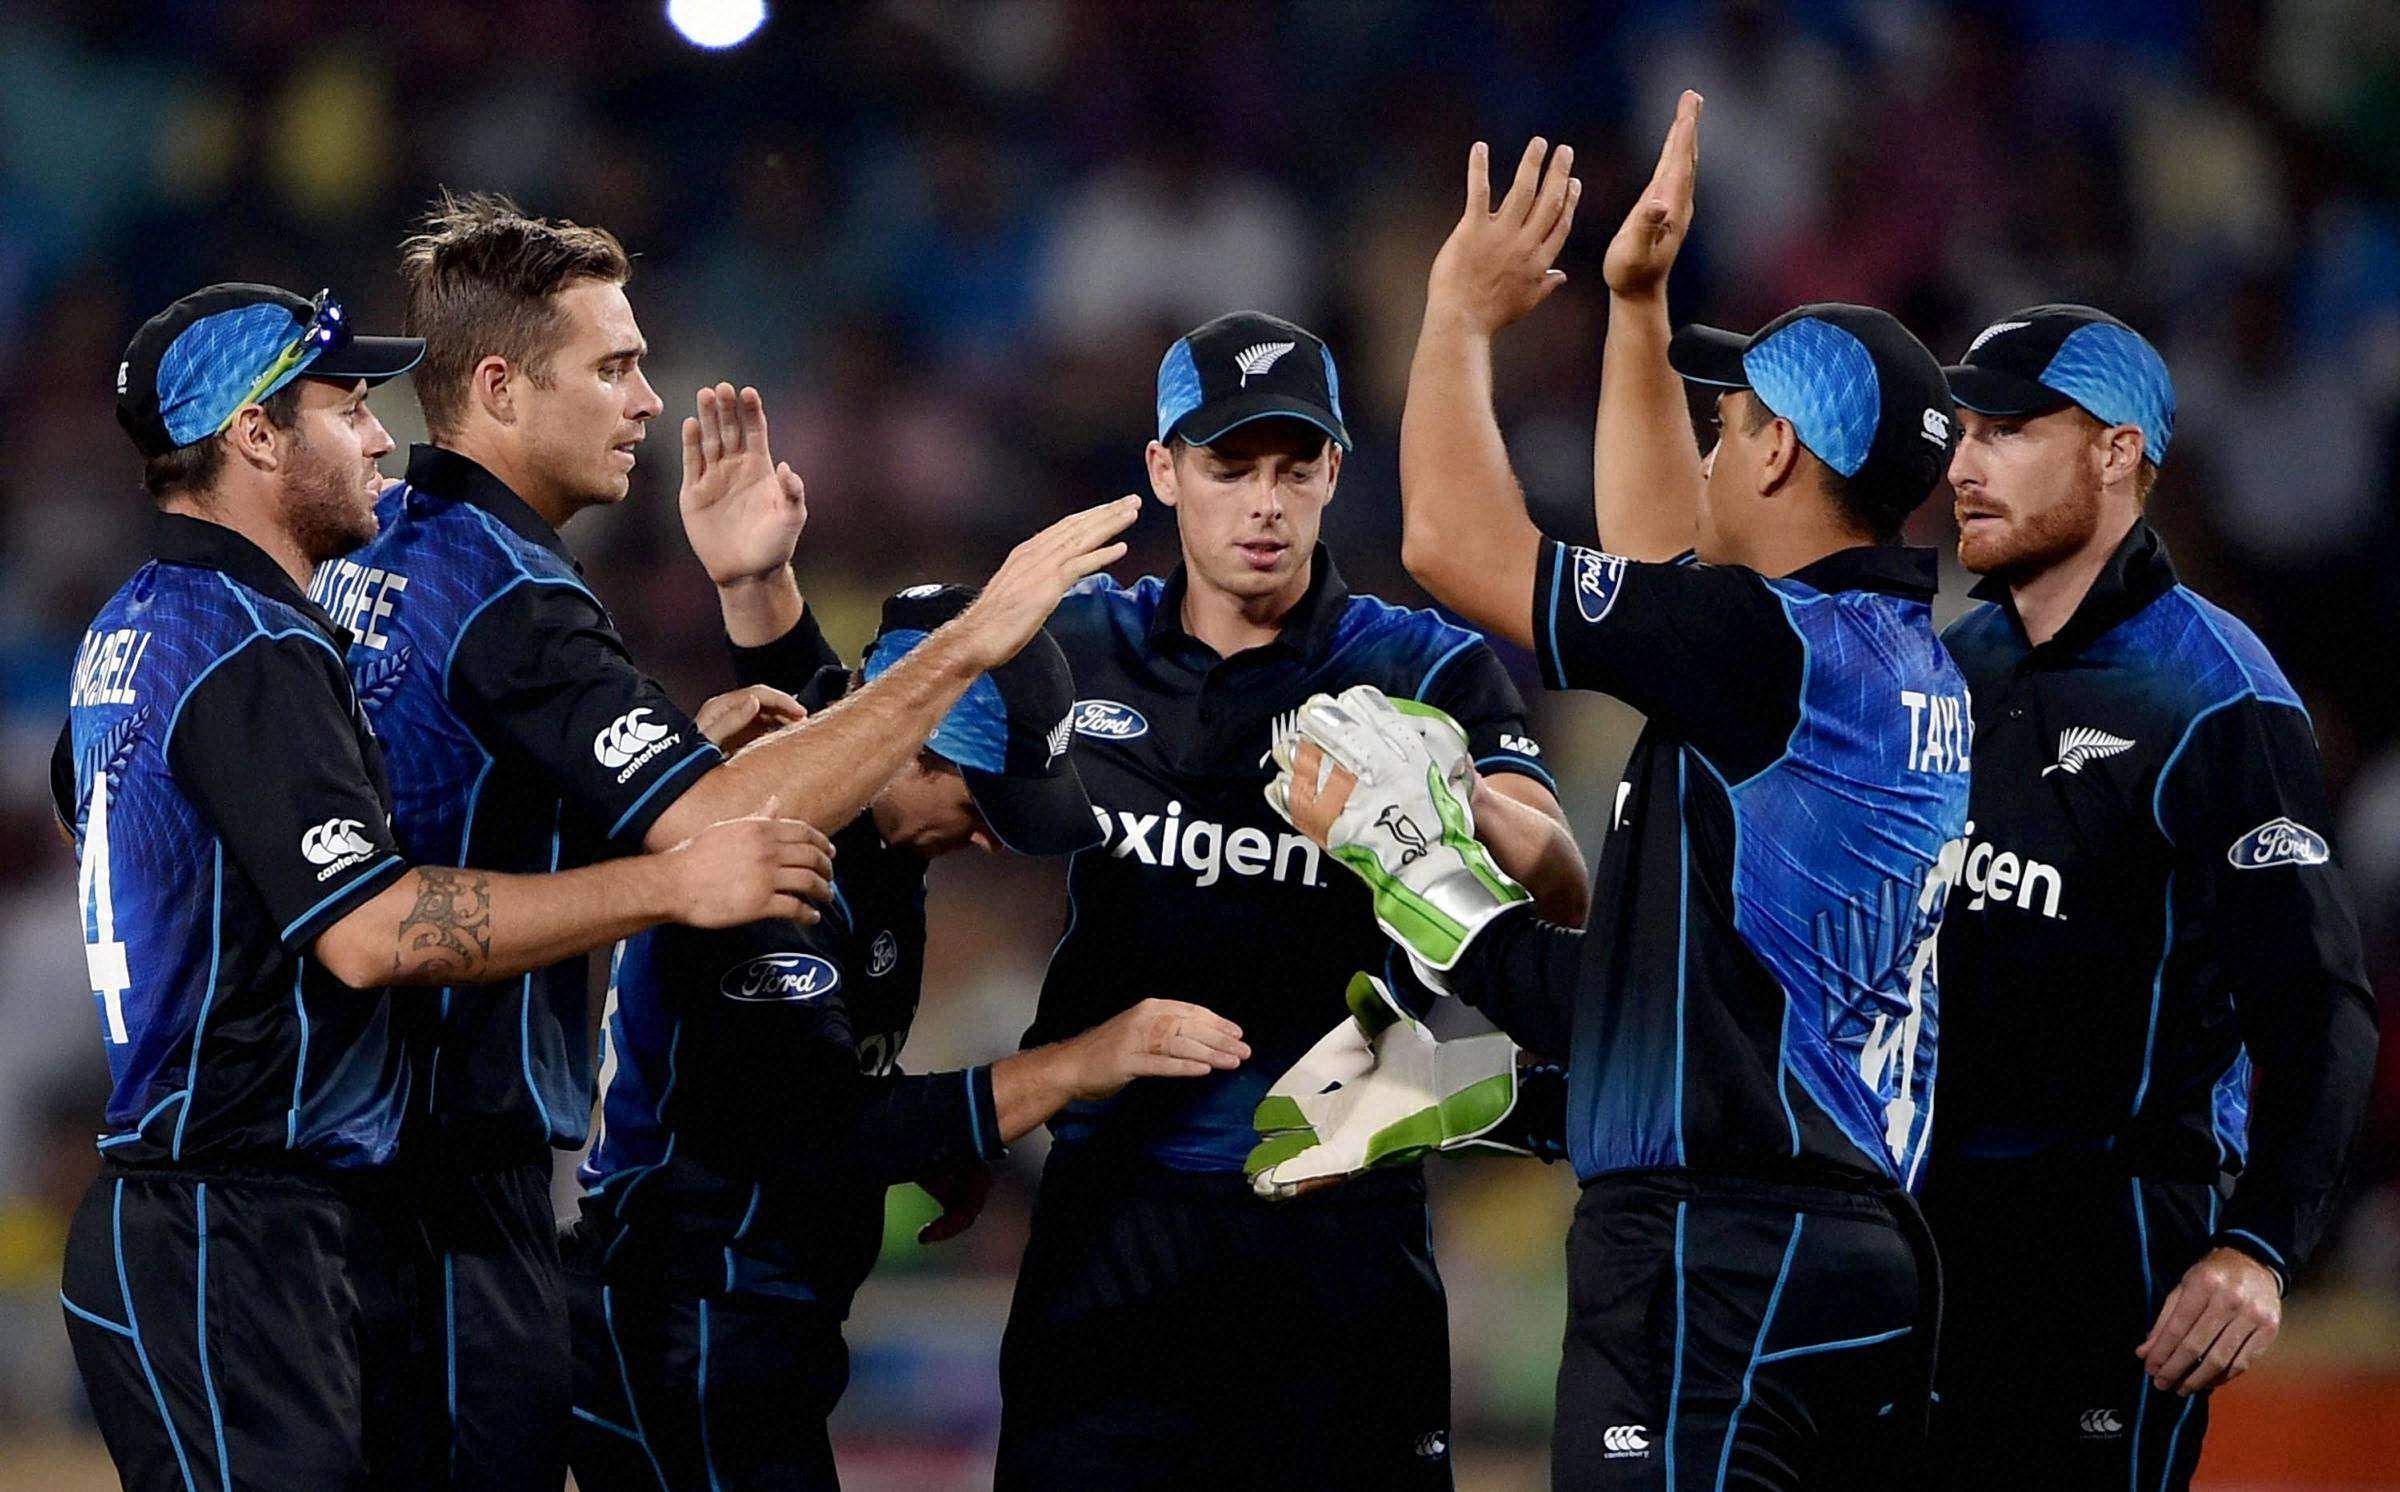 भारत के खिलाफ तीन मैचों की टी-20 सीरीज के लिए न्यूजीलैंड की टीम का हुआ ऐलान 11